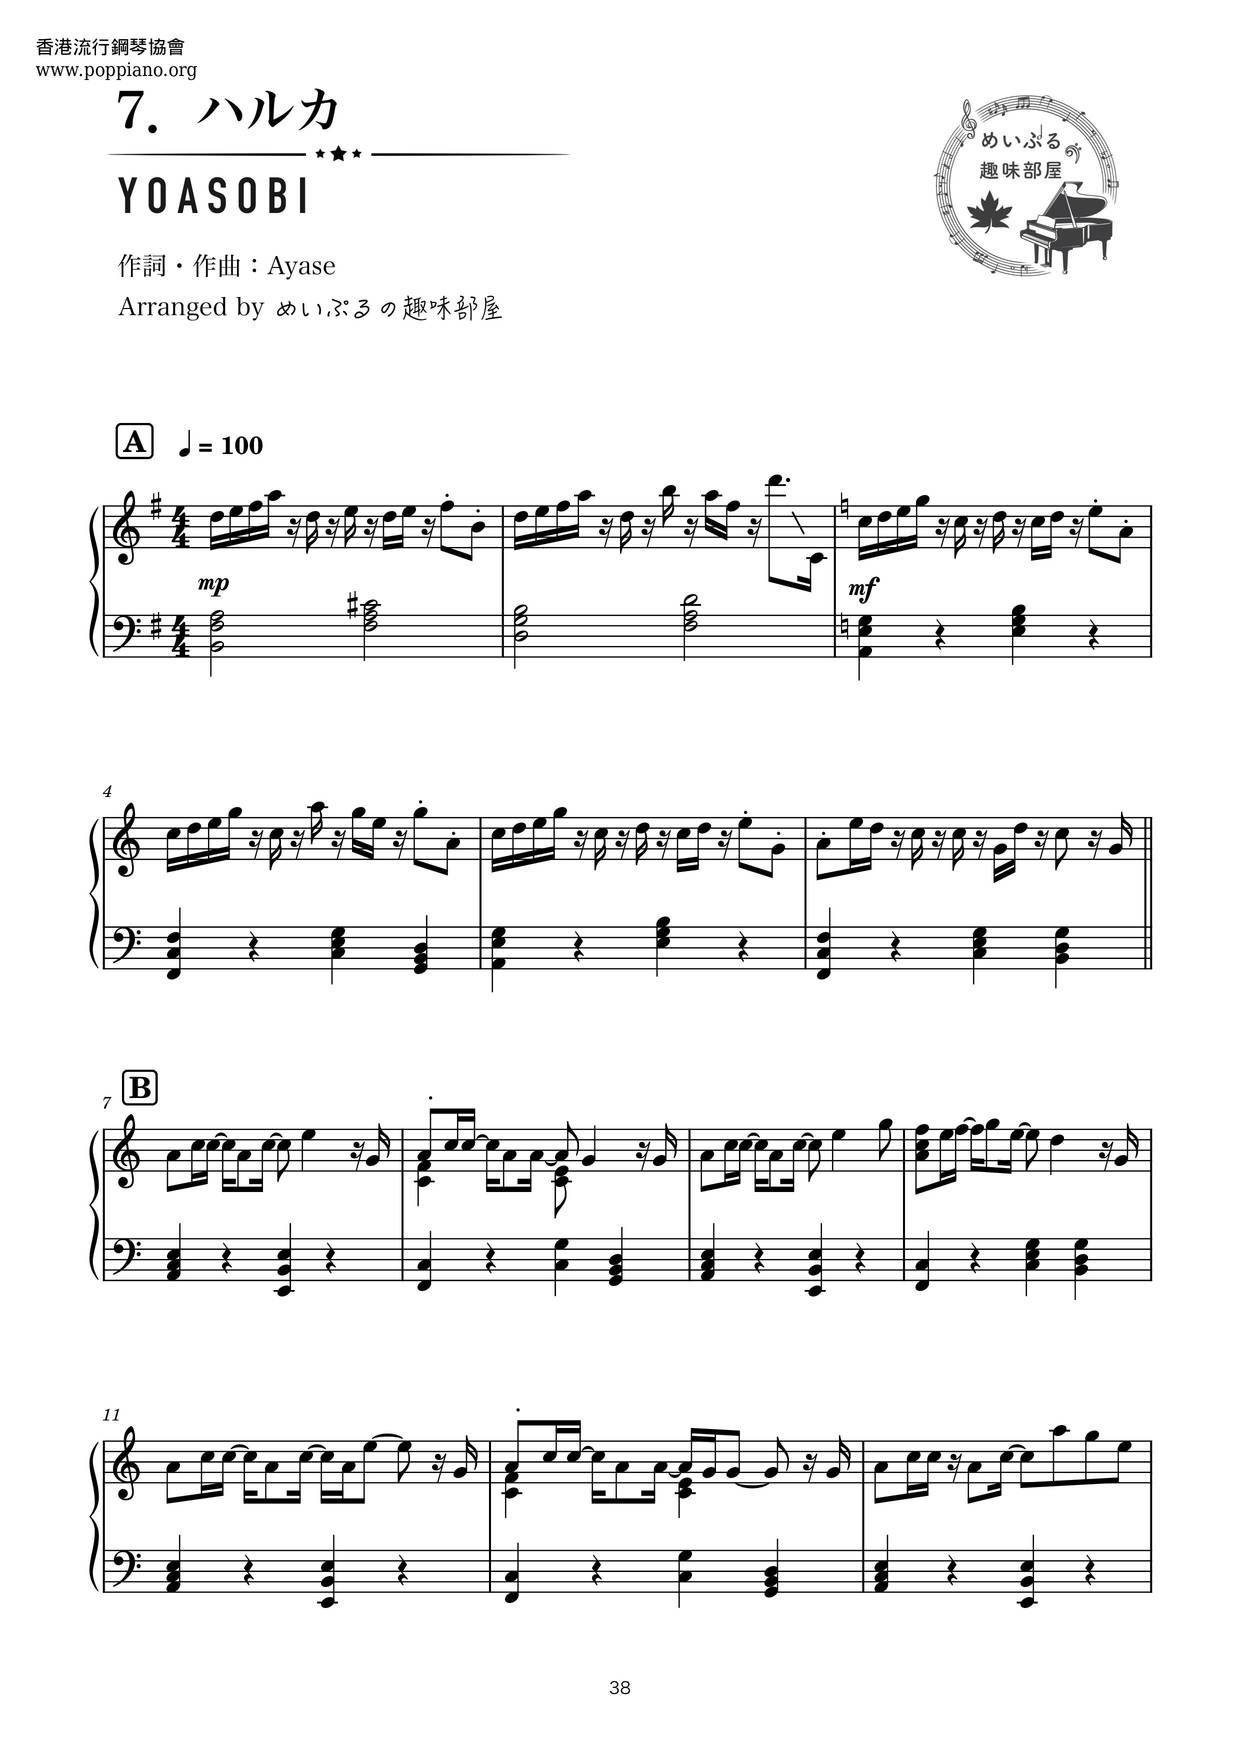 ヨアソビ ハルカ 楽谱 ピアノ譜pdf 香港ポップピアノ協会 無料pdf楽譜ダウンロード Gakufu